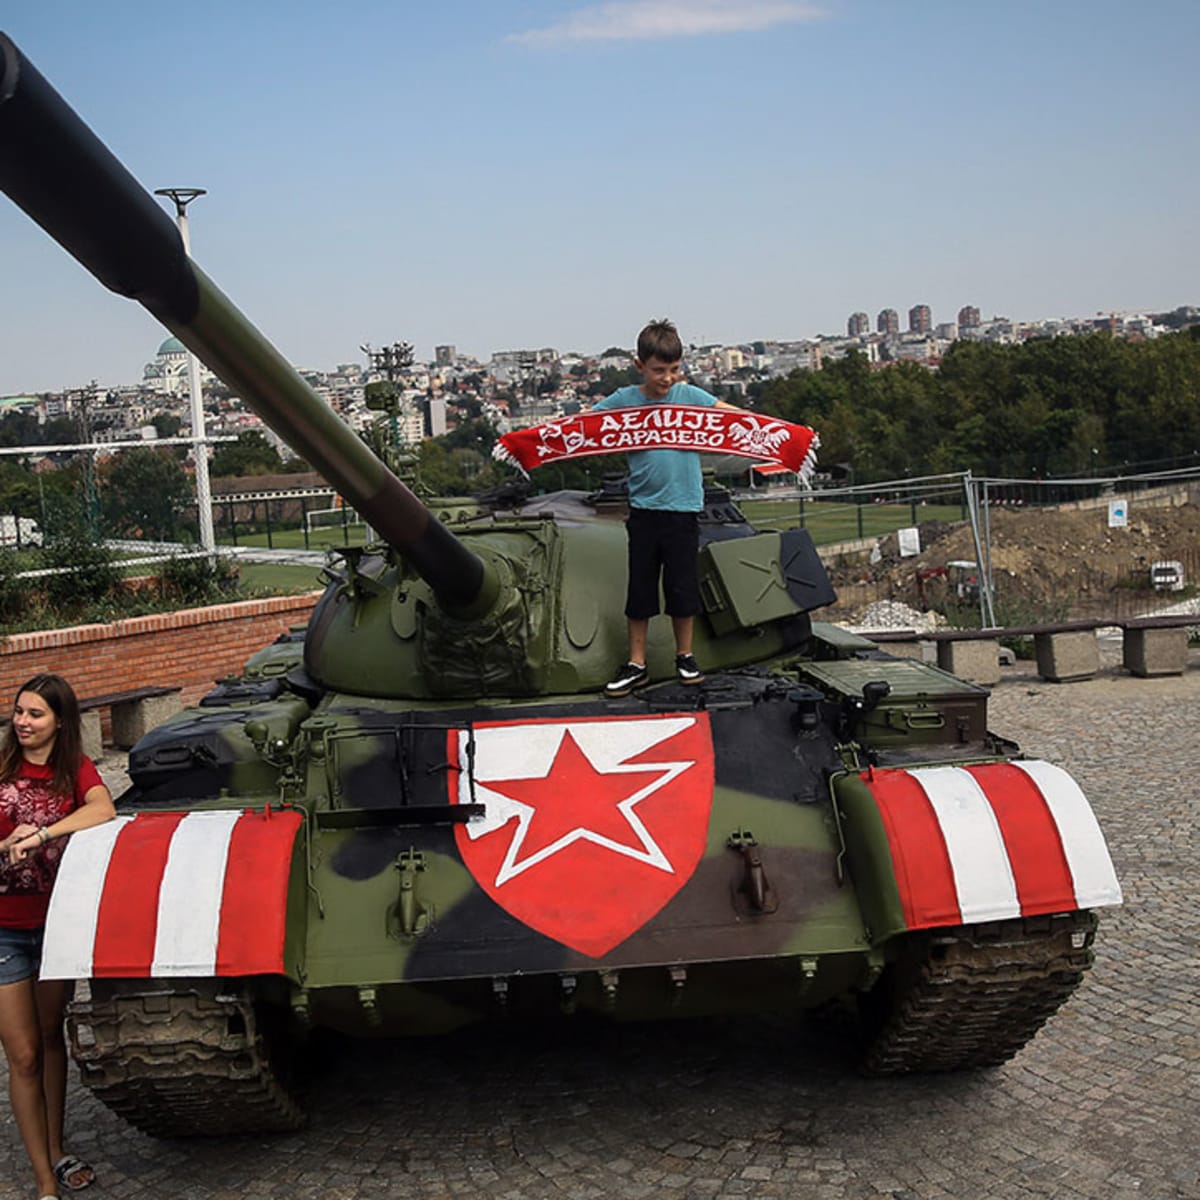 Red Star Belgrade fans park tank at soccer stadium - Sports